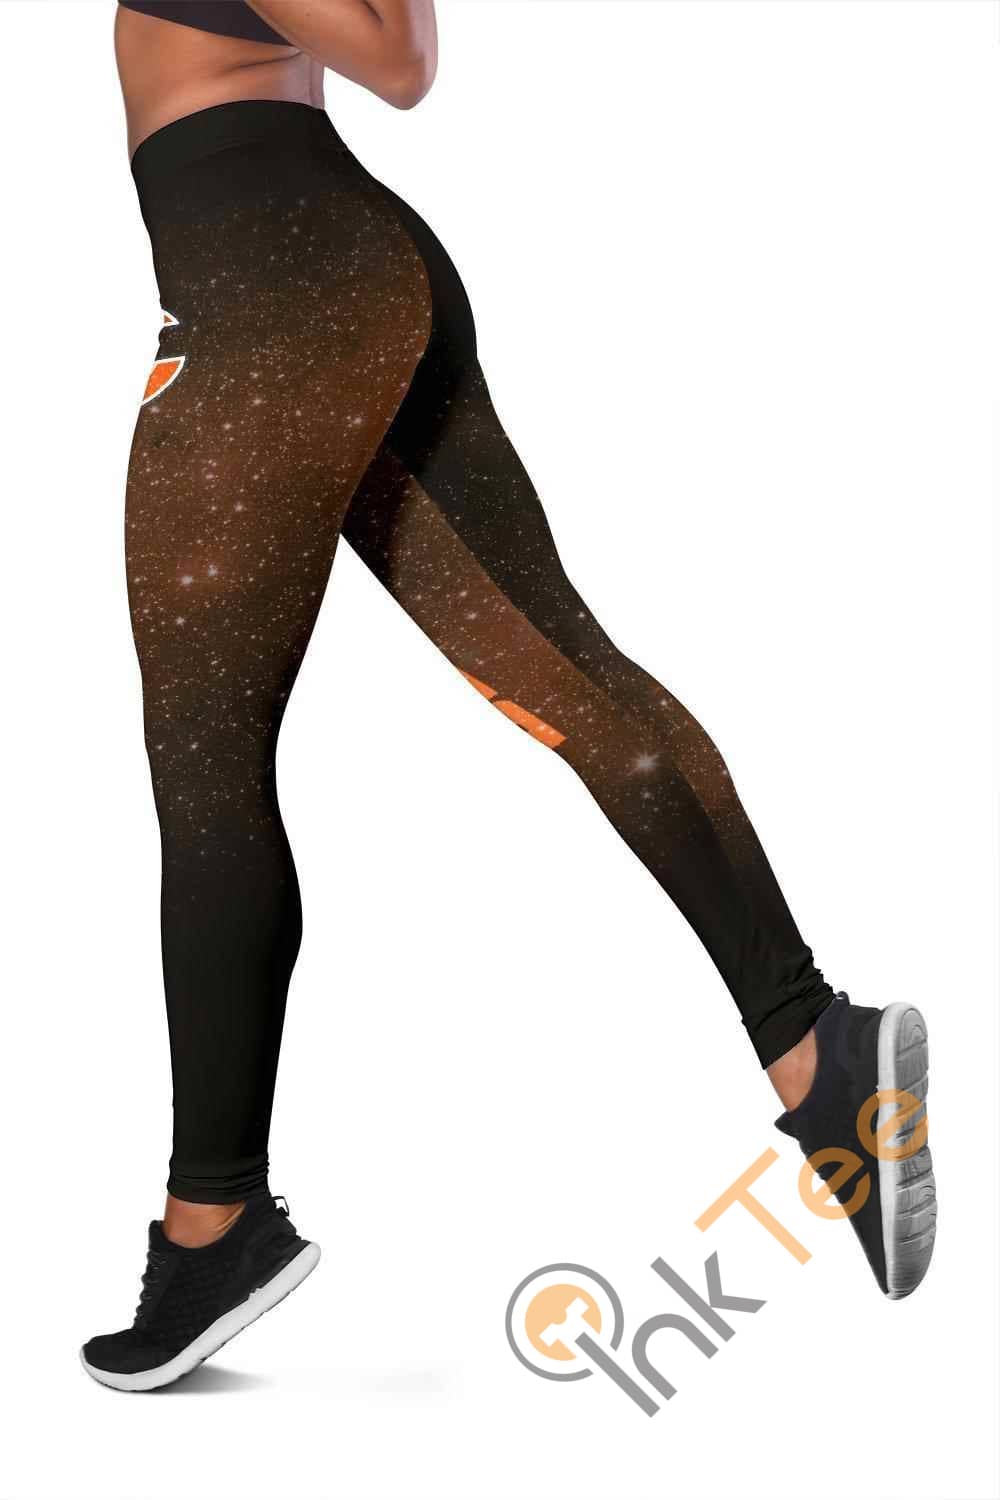 Inktee Store - Chicago Bears 3D All Over Print For Yoga Fitness Women'S Leggings Image